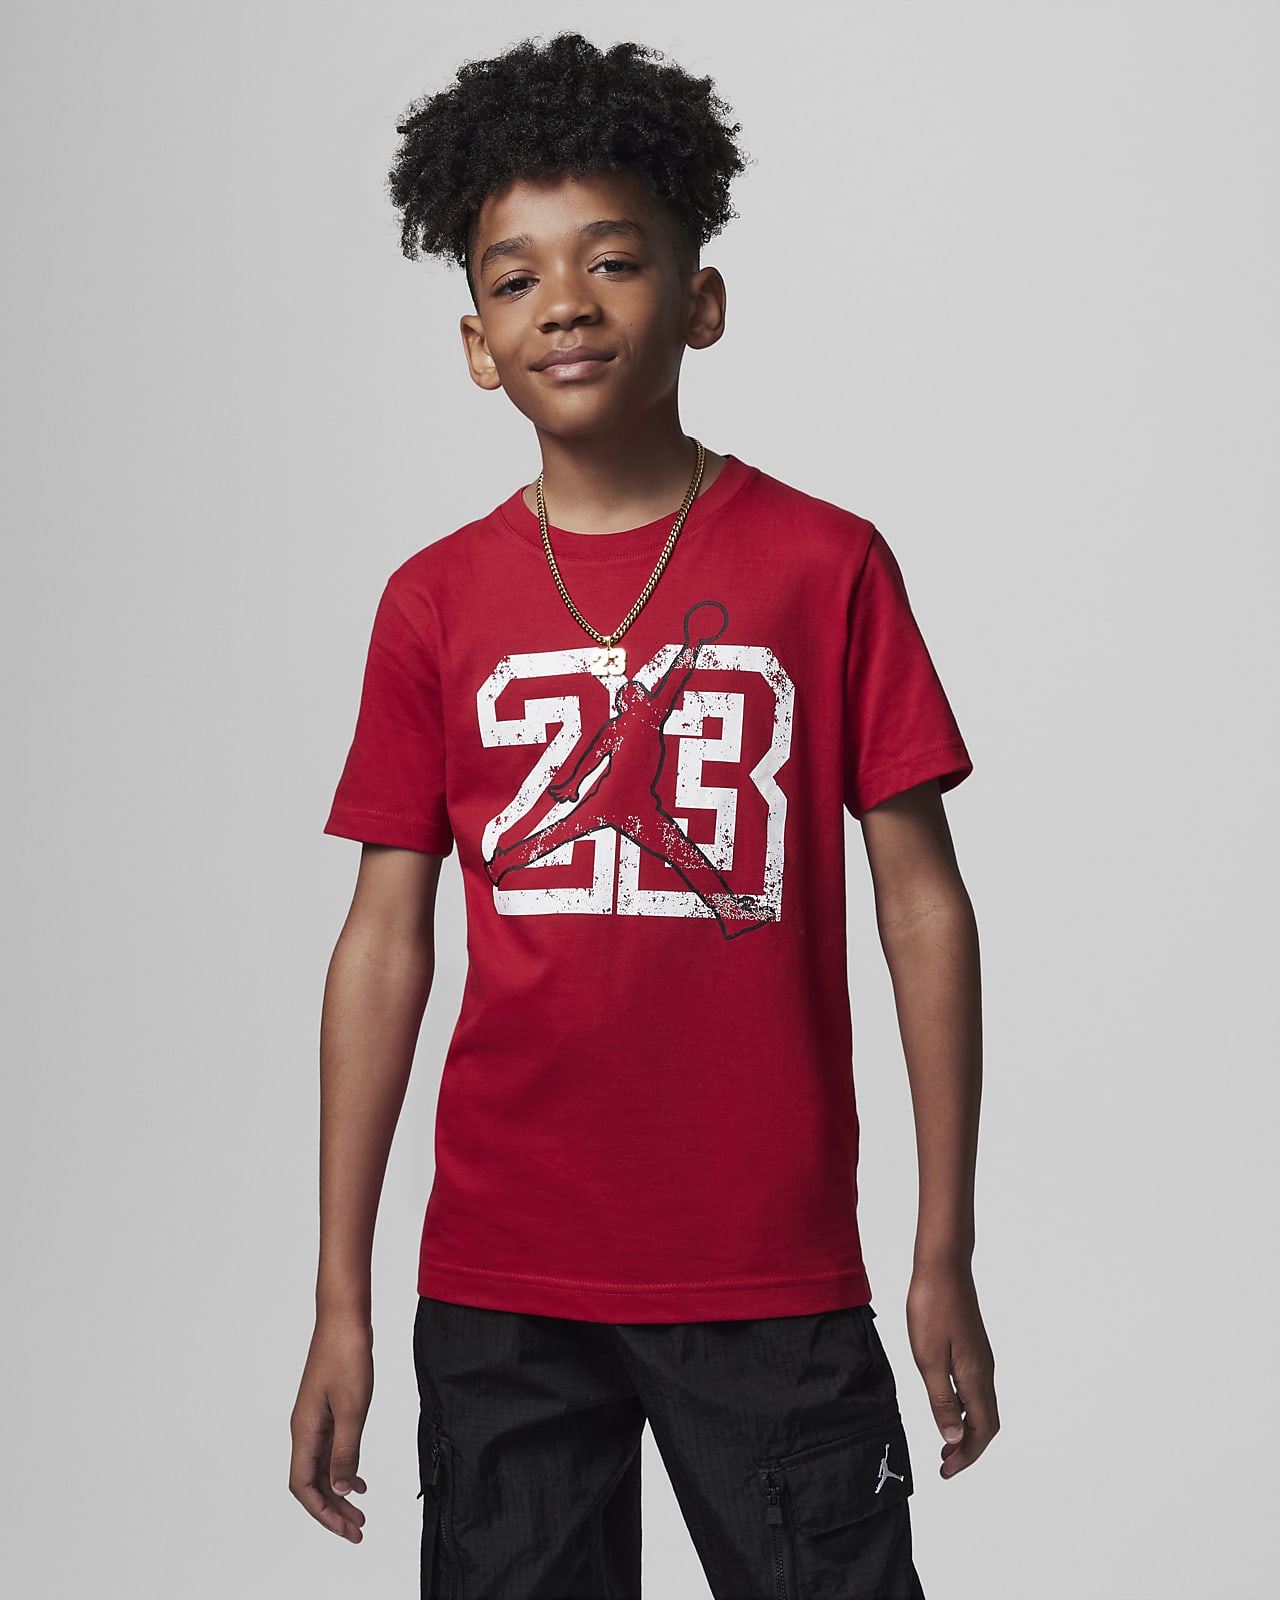 Kids Nike Air Jordan Vintage Jersey Style T Shirt 23 Photo -  Hong Kong